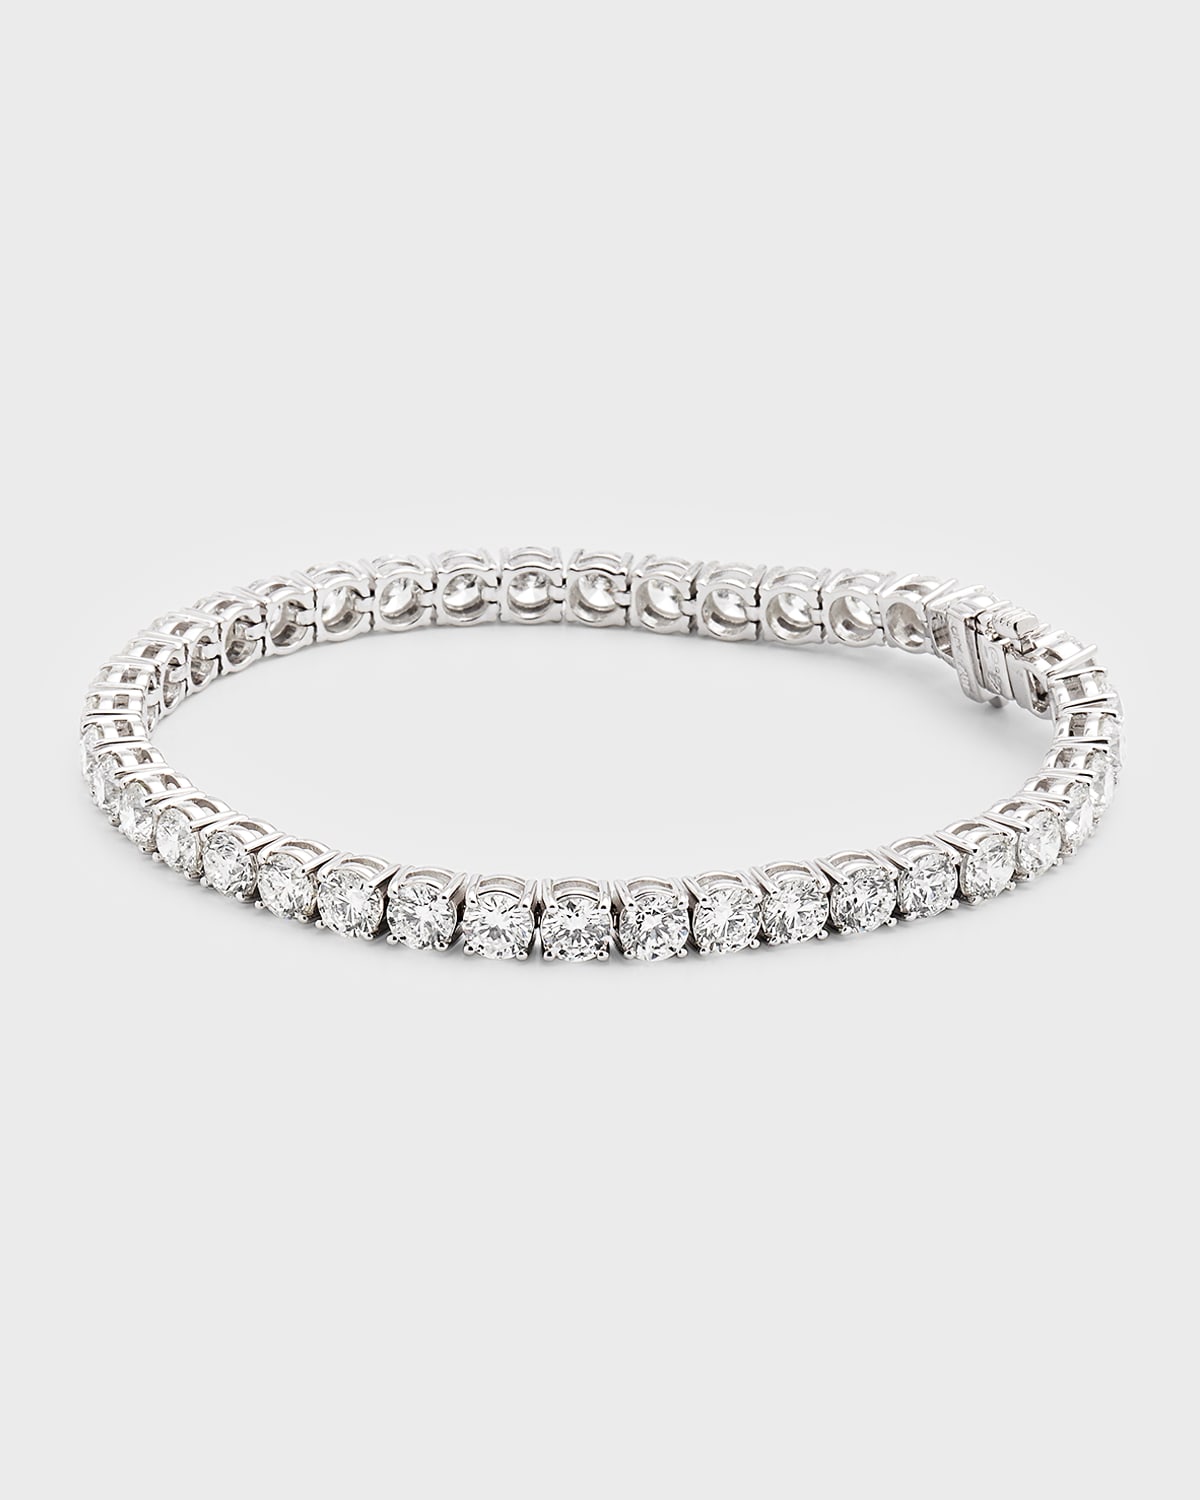 Neiman Marcus Diamonds 18k White Gold Fg-si1 Diamond Tennis Bracelet